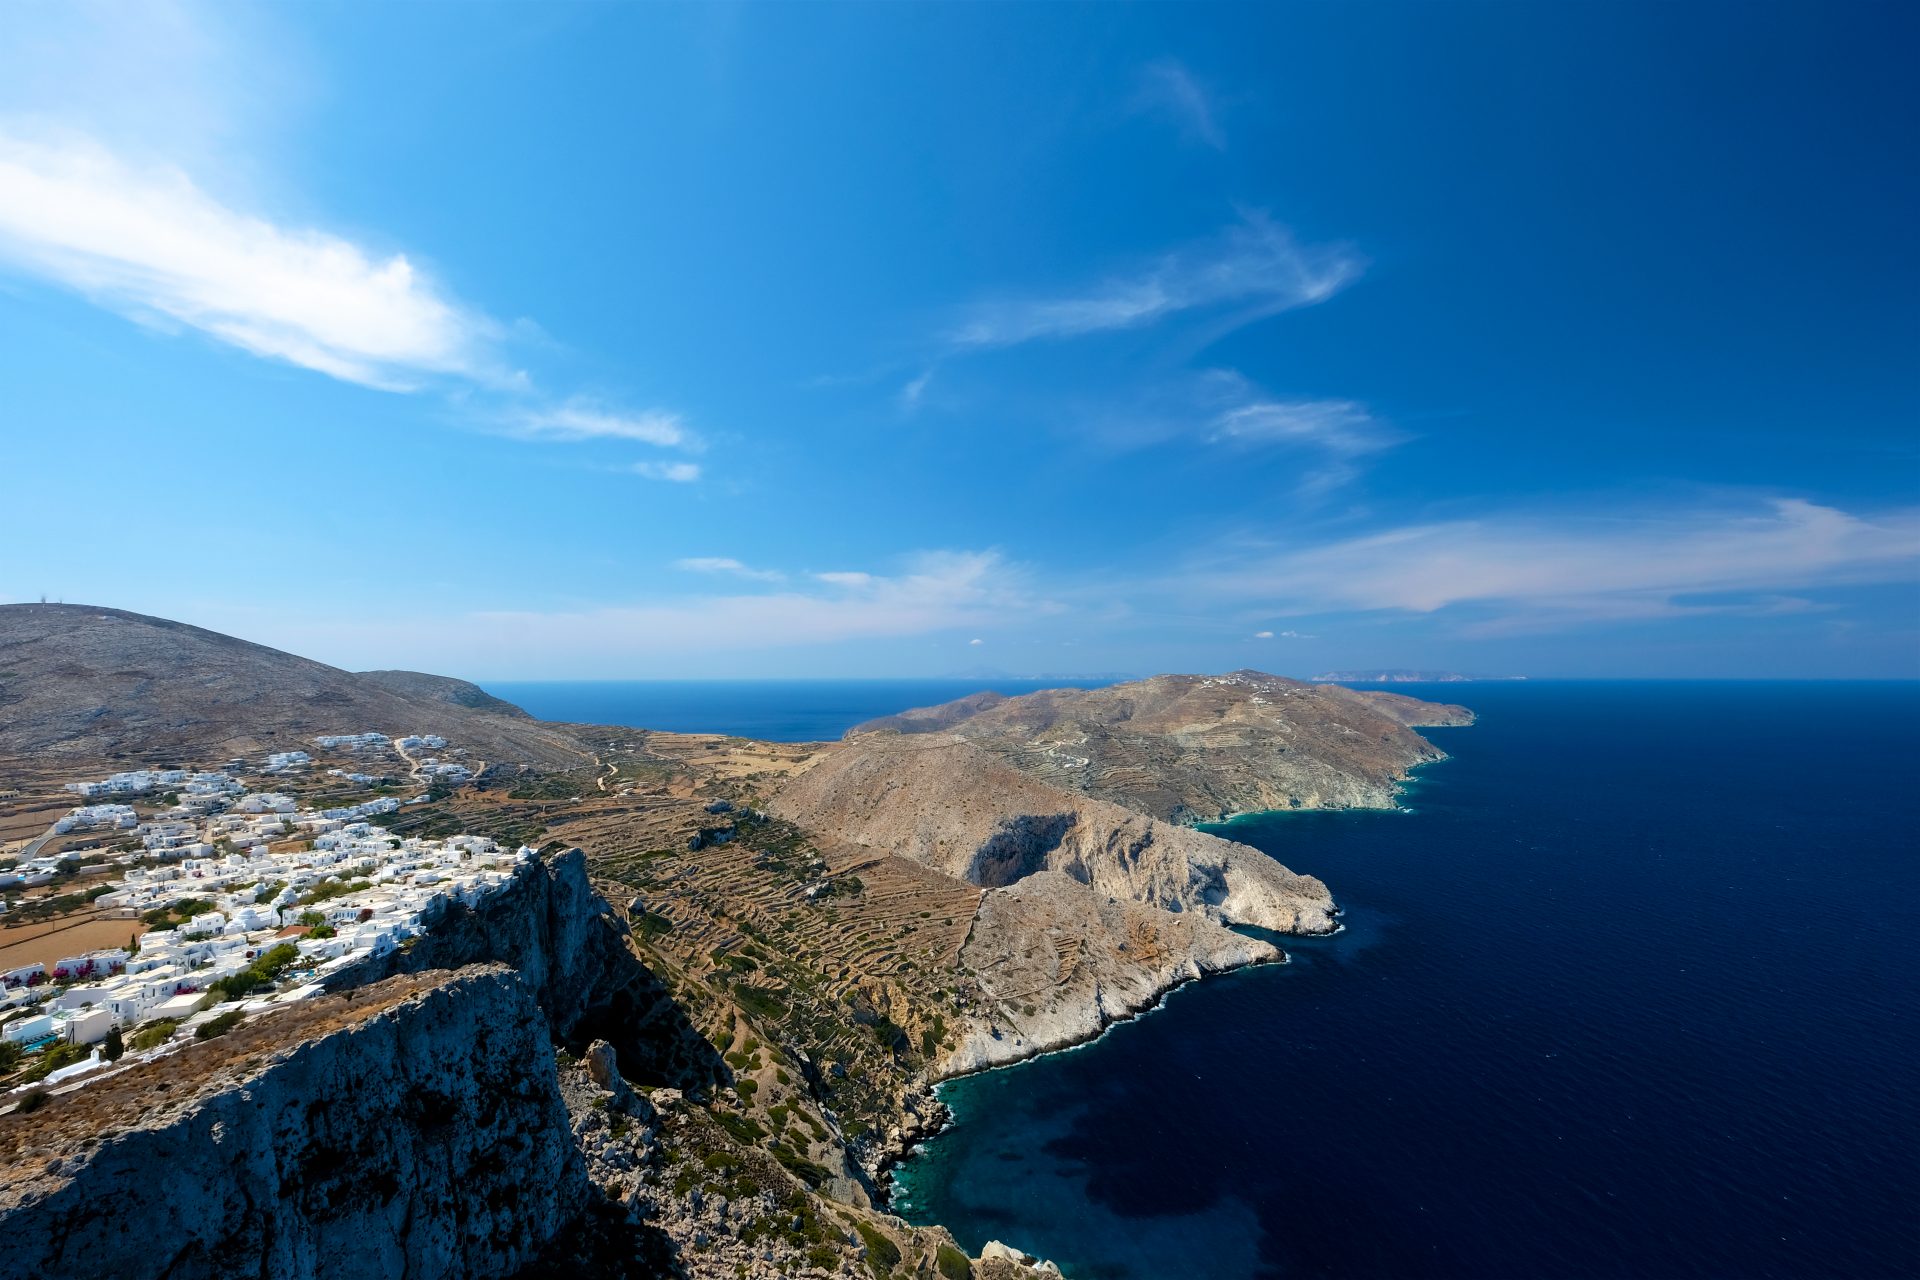 <p><strong>Où ? </strong>Dans les Cyclades, entre Milos et Sikinos.</p> <p><strong>Comment s'y rendre ? </strong>En bateau depuis le port de Pirée et depuis les autres îles des Cyclades.</p> <p><strong>Que faire sur cette île ? </strong>Se détendre sur ses plages, faire des randonnées, visiter à pied ses trois villages.  </p>